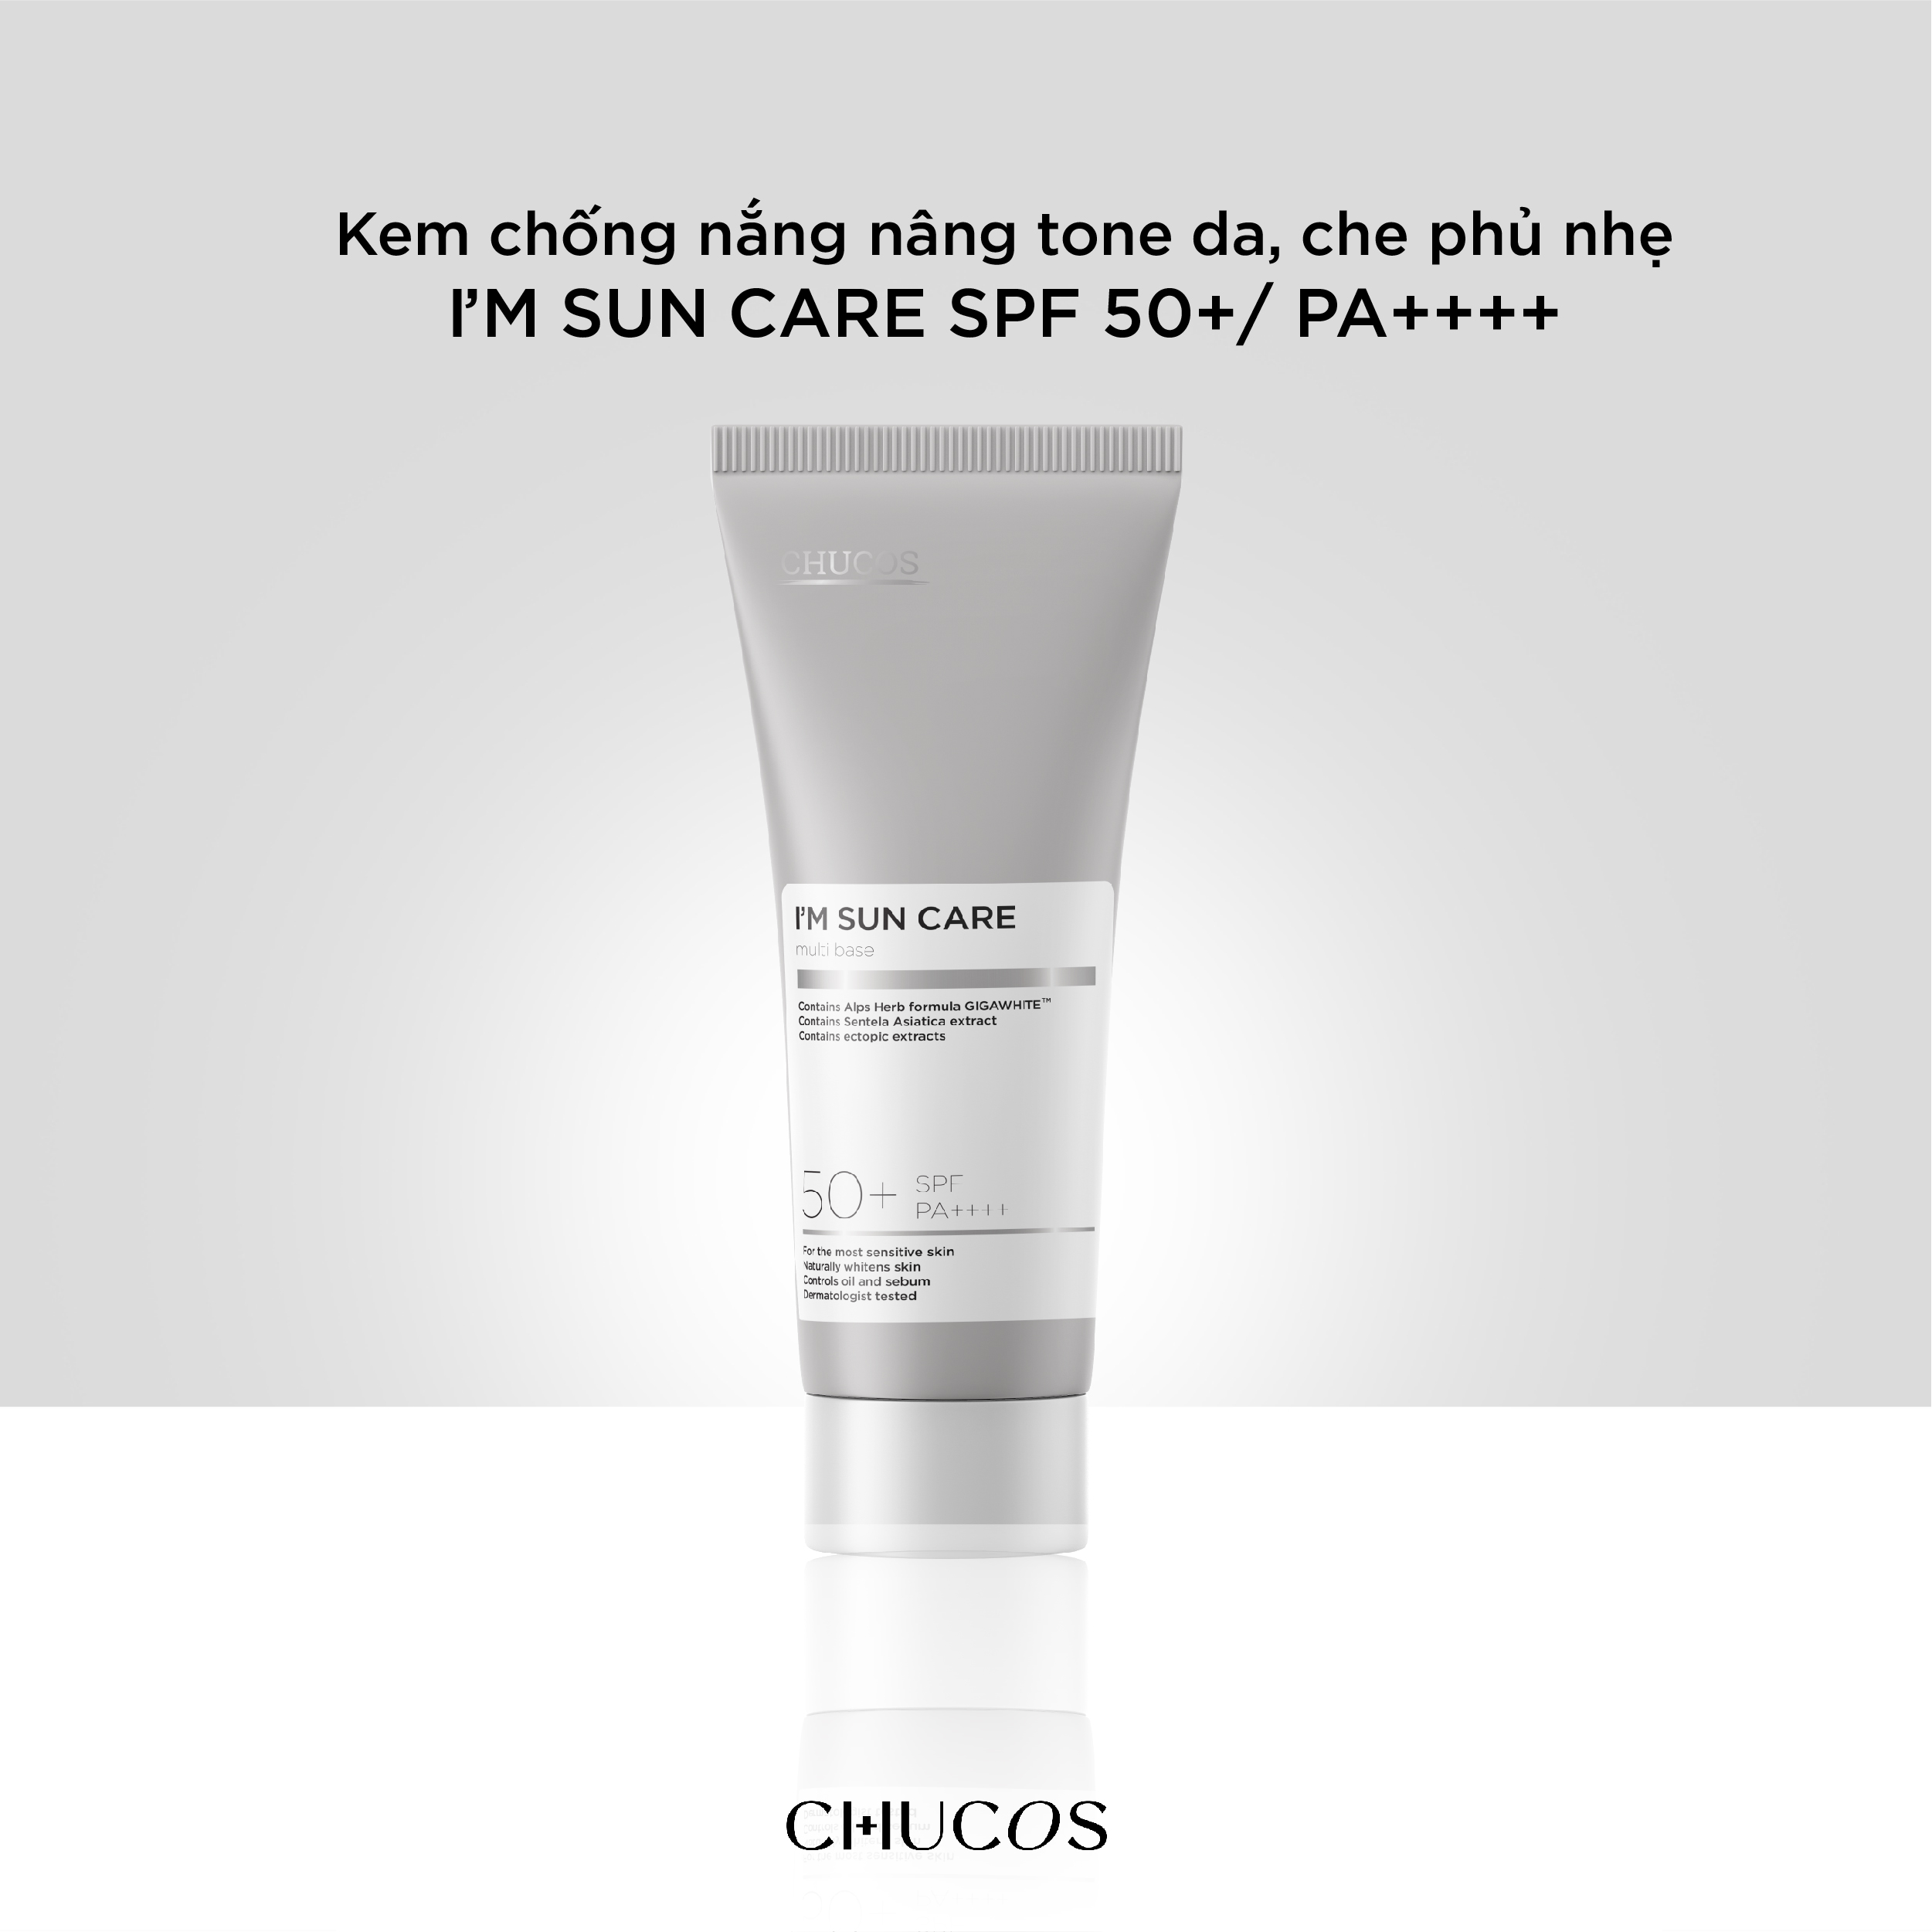 Kem chống nắng nâng tone da, che phủ nhẹ I’m Sun Care SPF 50+/PA++++ Bảo vệ da, kháng viêm, kiềm dầu 50ml - Sản phẩm chống nắng và phục hồi sau khi đi nắng Nhãn hiệu CHUCOS | MuaDoTot.com